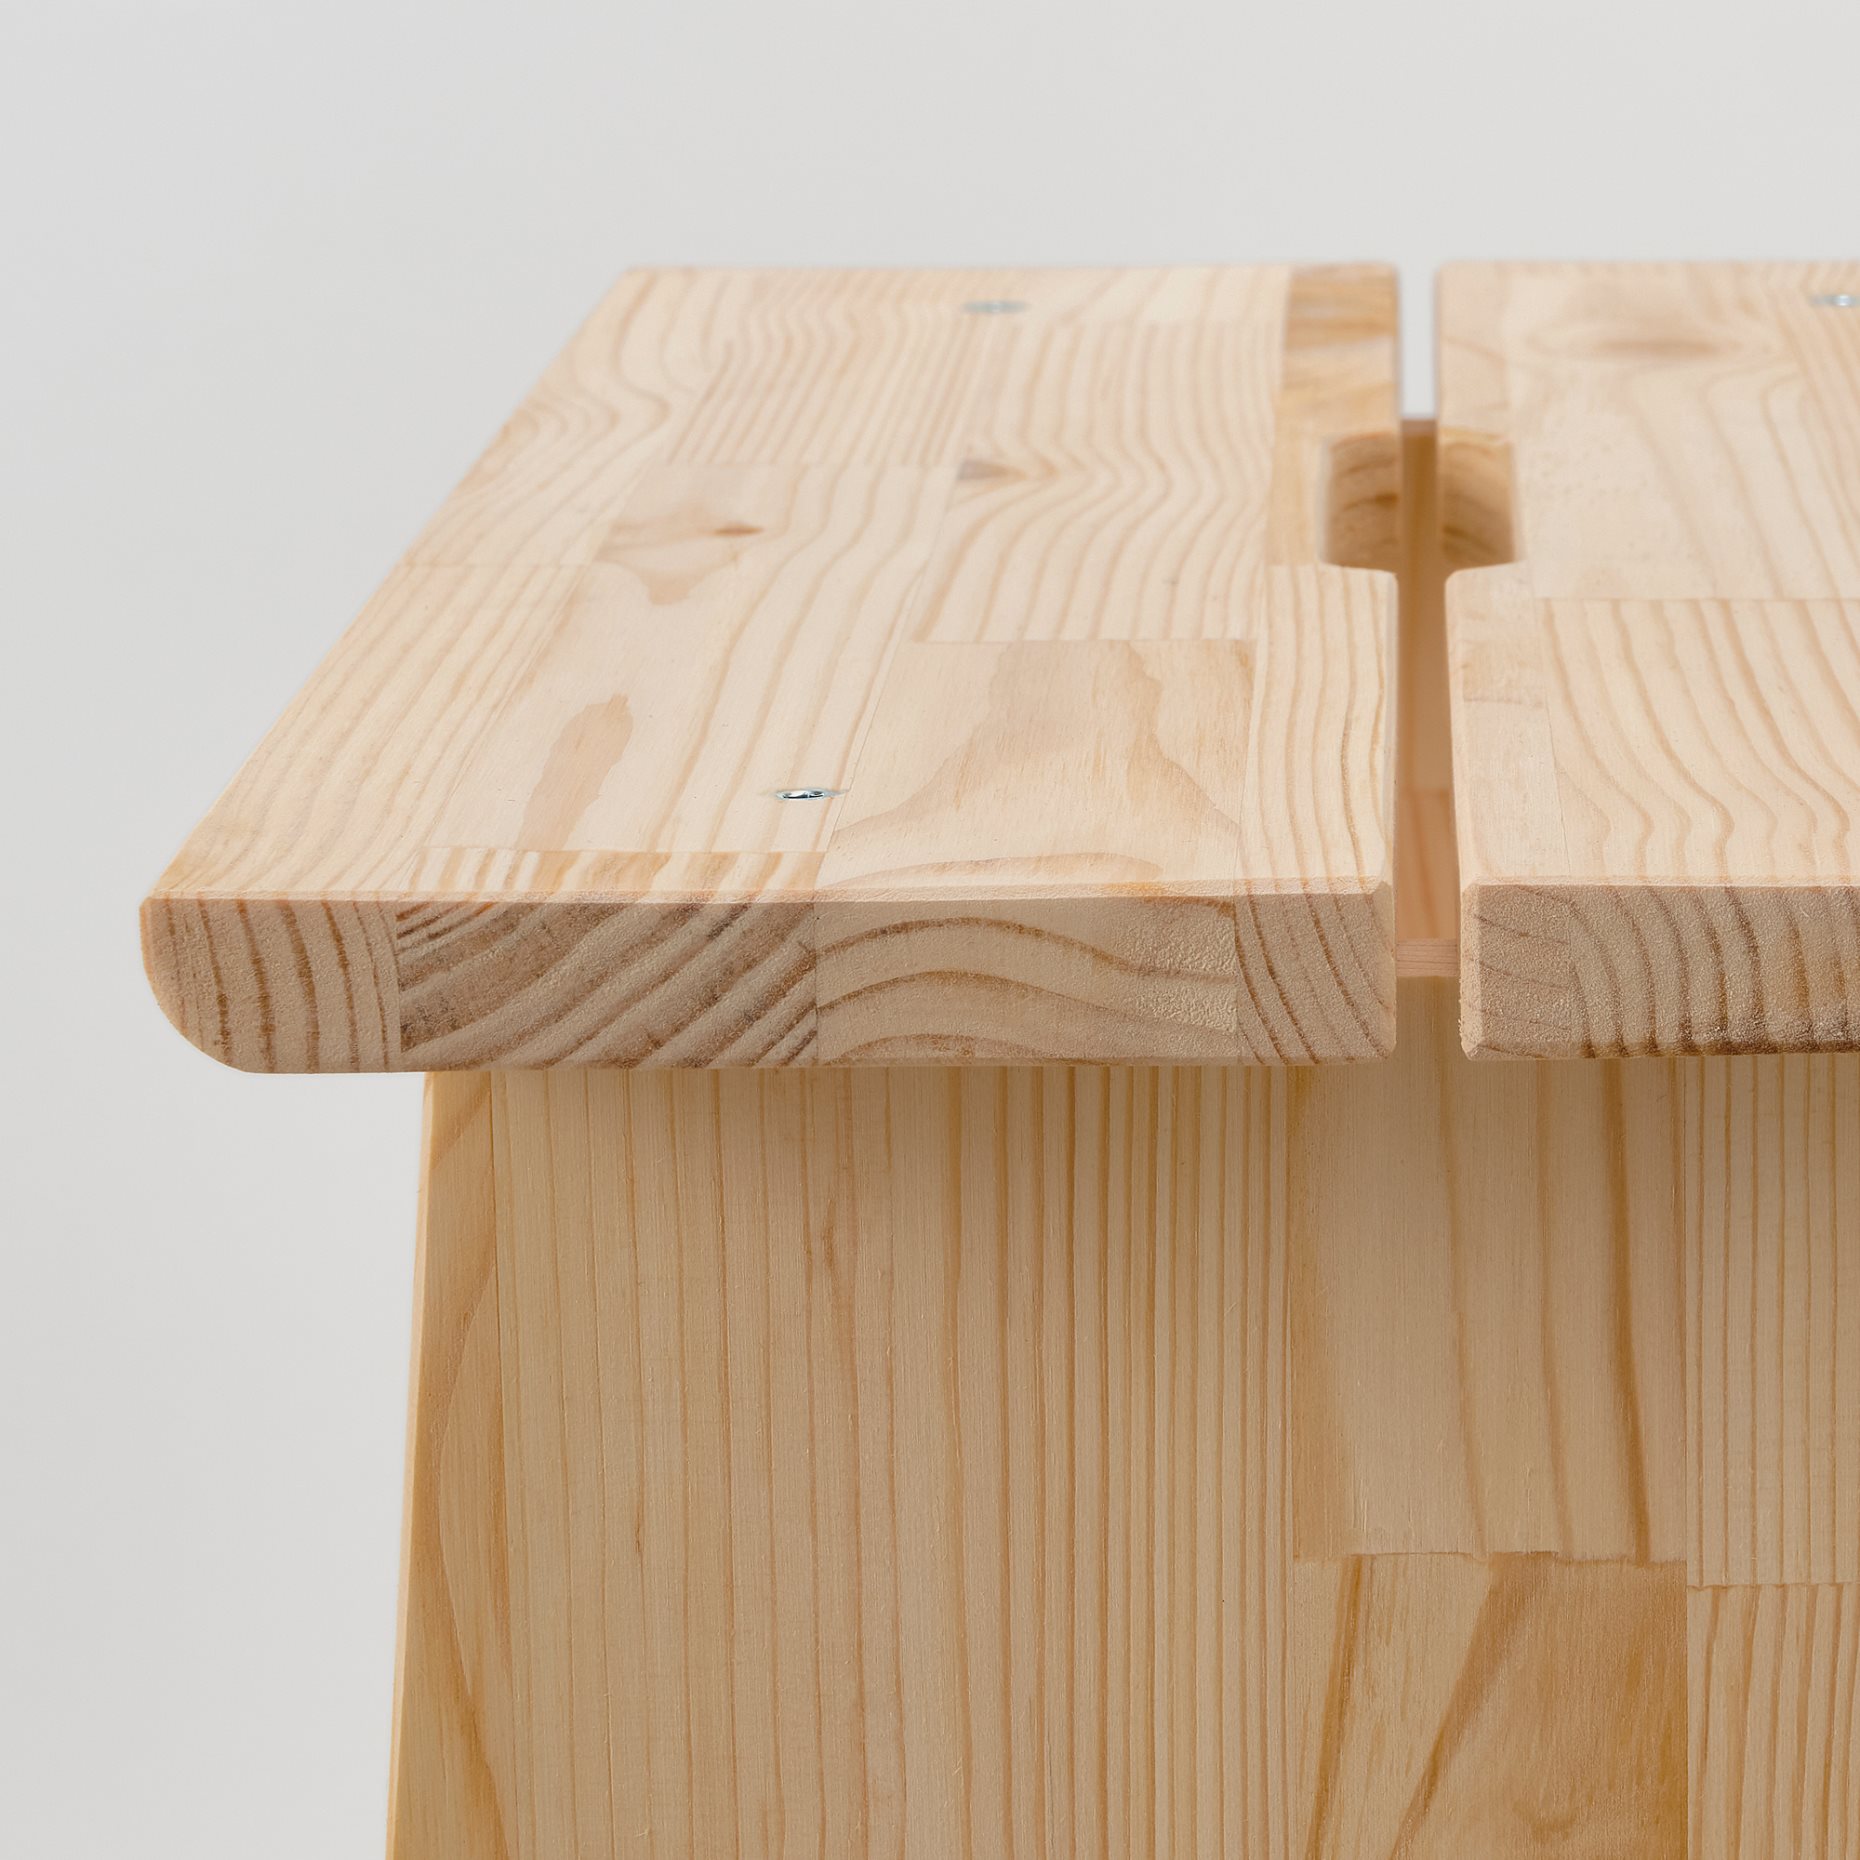 PERJOHAN, stool with storage, 804.853.38